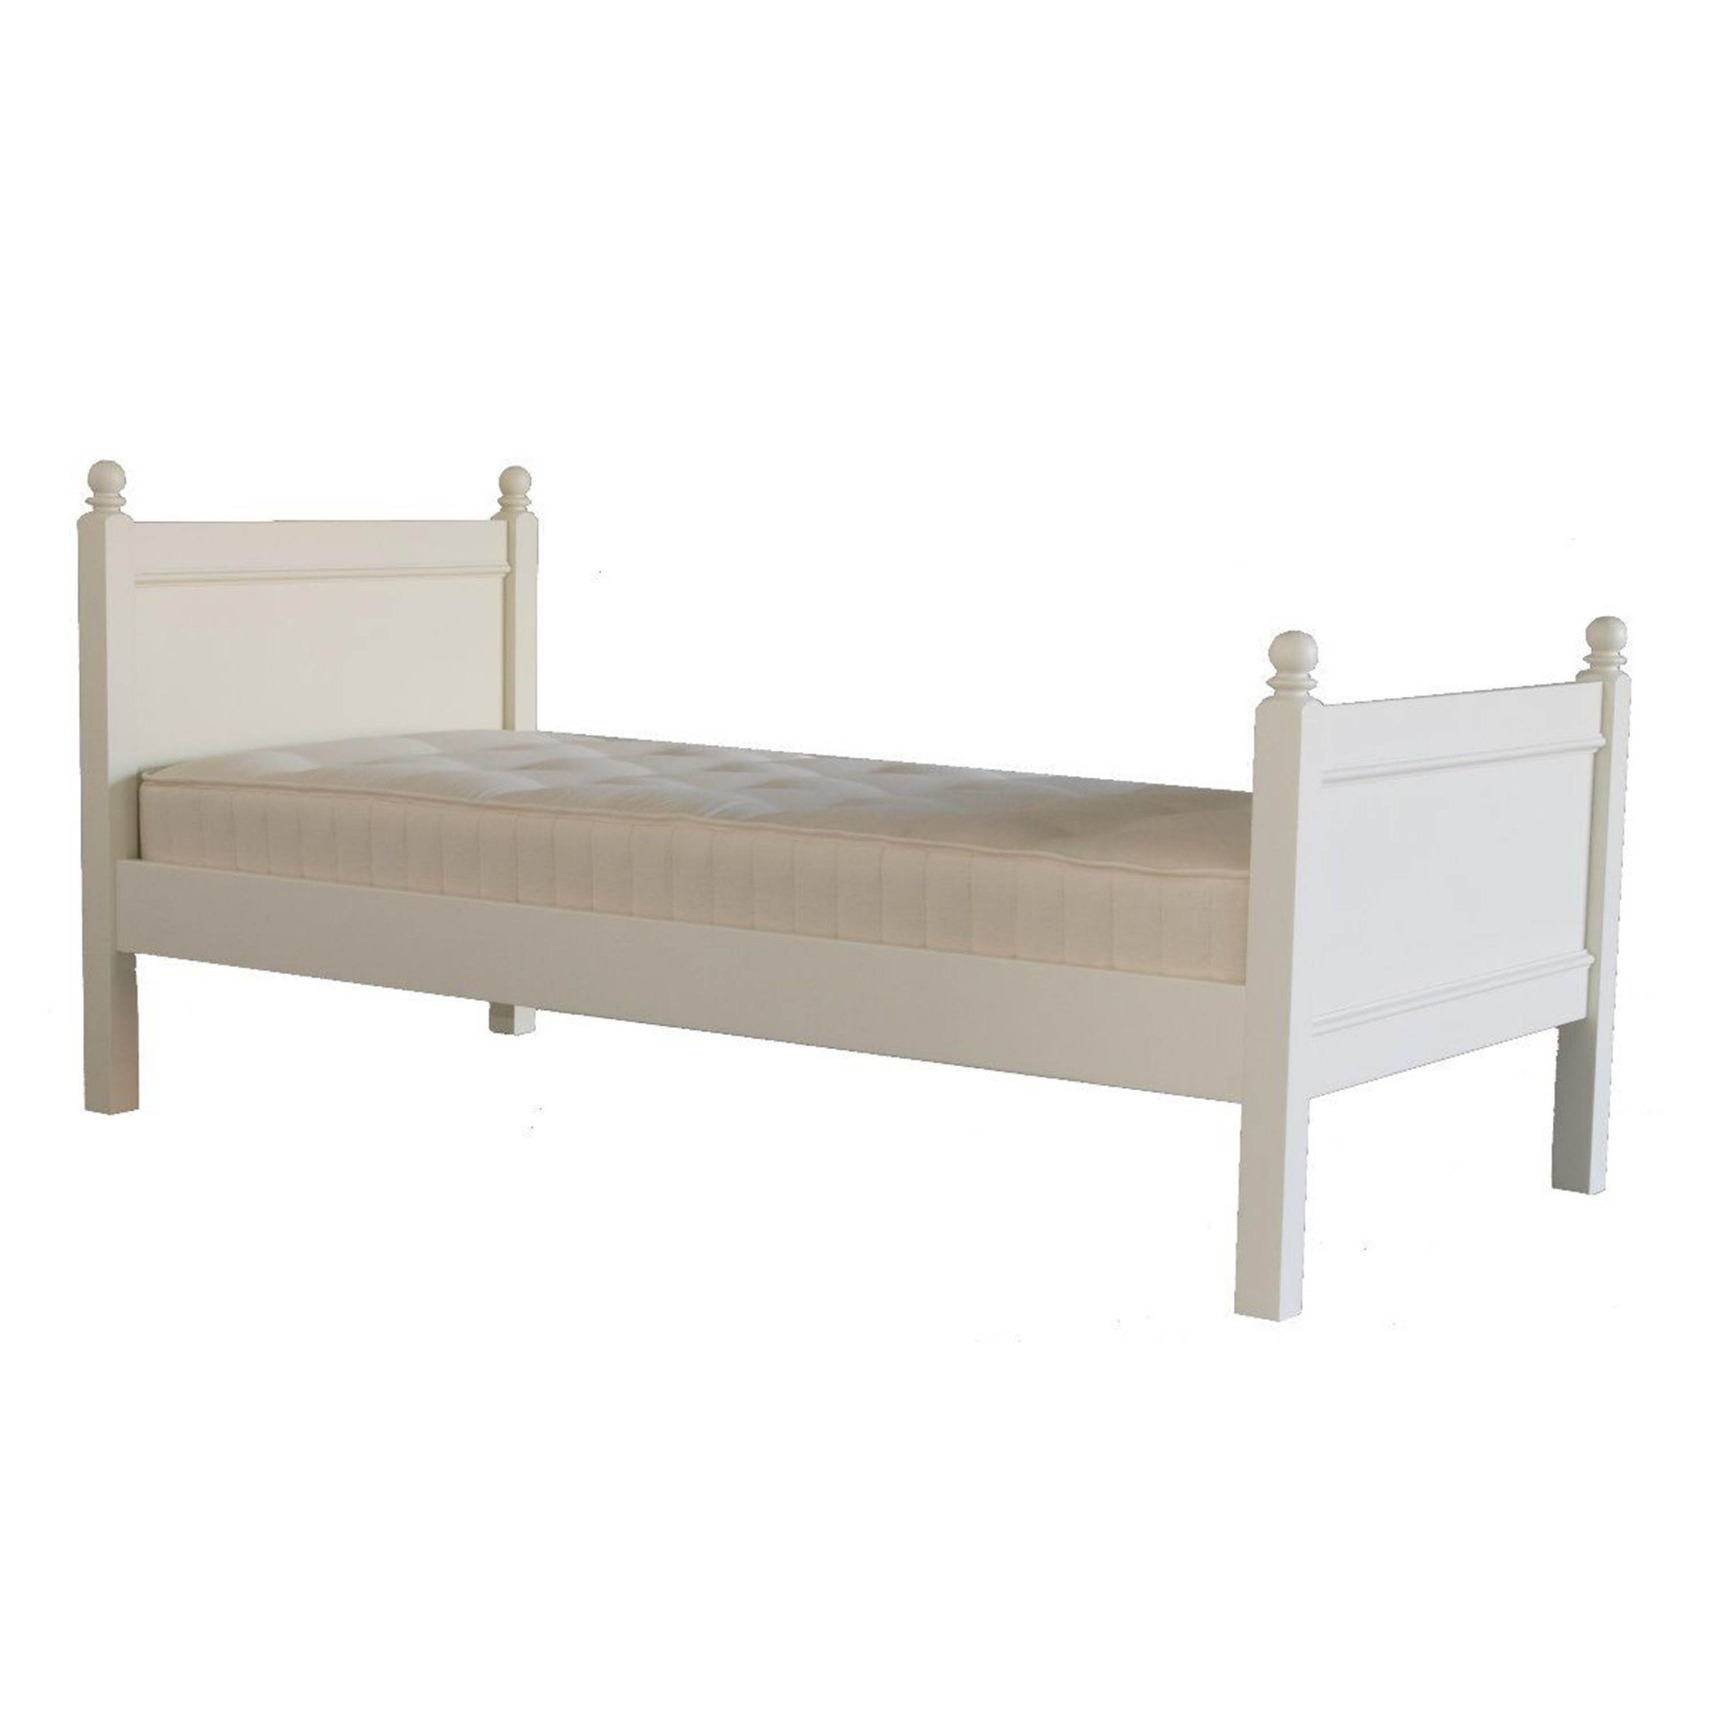 Little Folks Furniture Fargo Bed Frame Ivory White